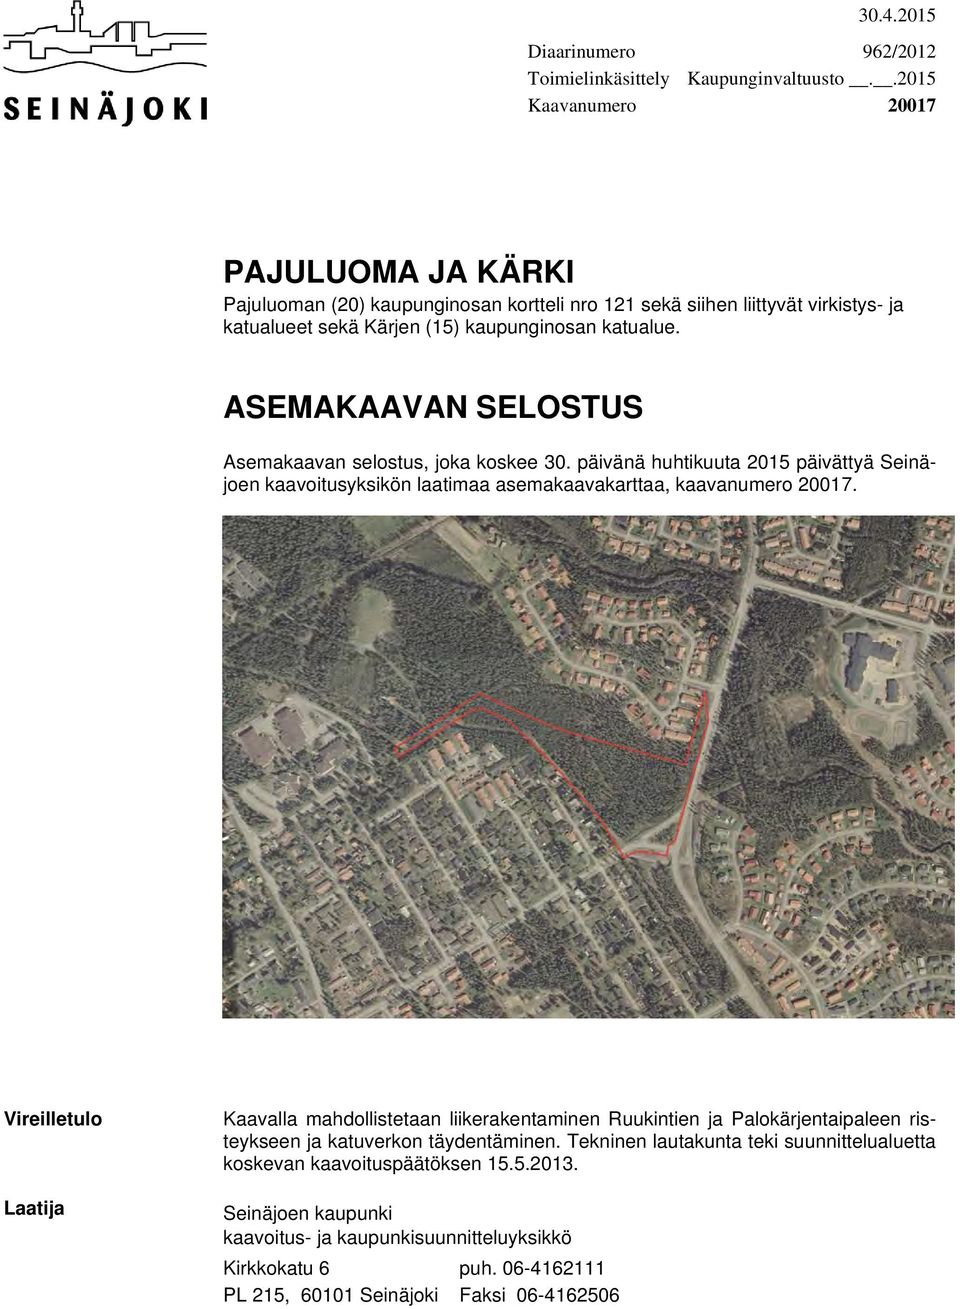 ASEMAKAAVAN SELOSTUS Asemakaavan selostus, joka koskee 30. päivänä huhtikuuta 2015 päivättyä Seinäjoen kaavoitusyksikön laatimaa asemakaavakarttaa, kaavanumero 20017.